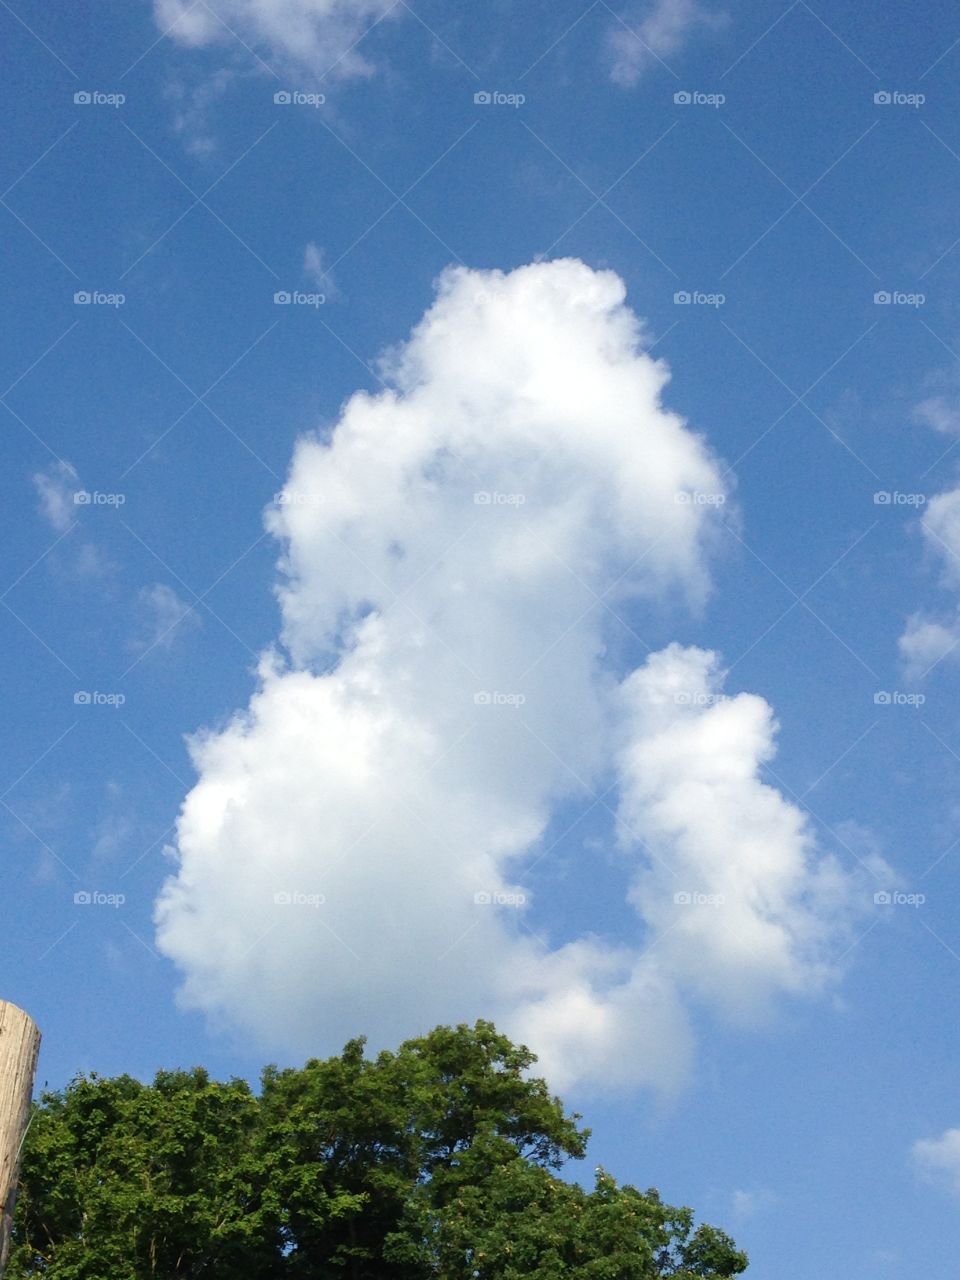 Poodle cloud